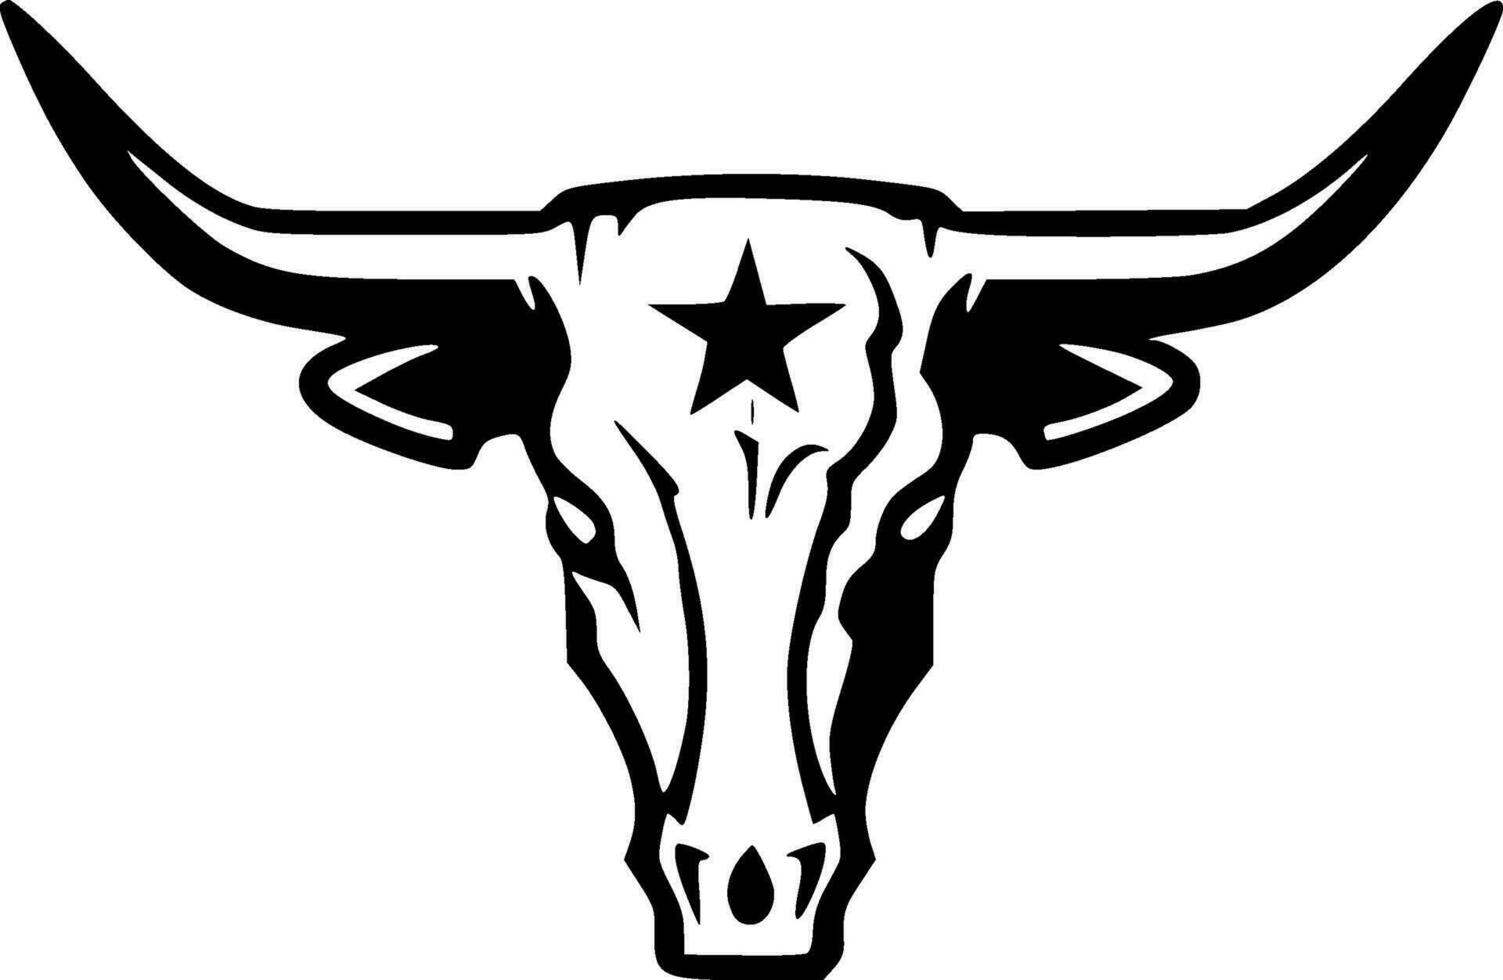 texas longhorn huvud - hög kvalitet vektor logotyp - vektor illustration idealisk för t-shirt grafisk